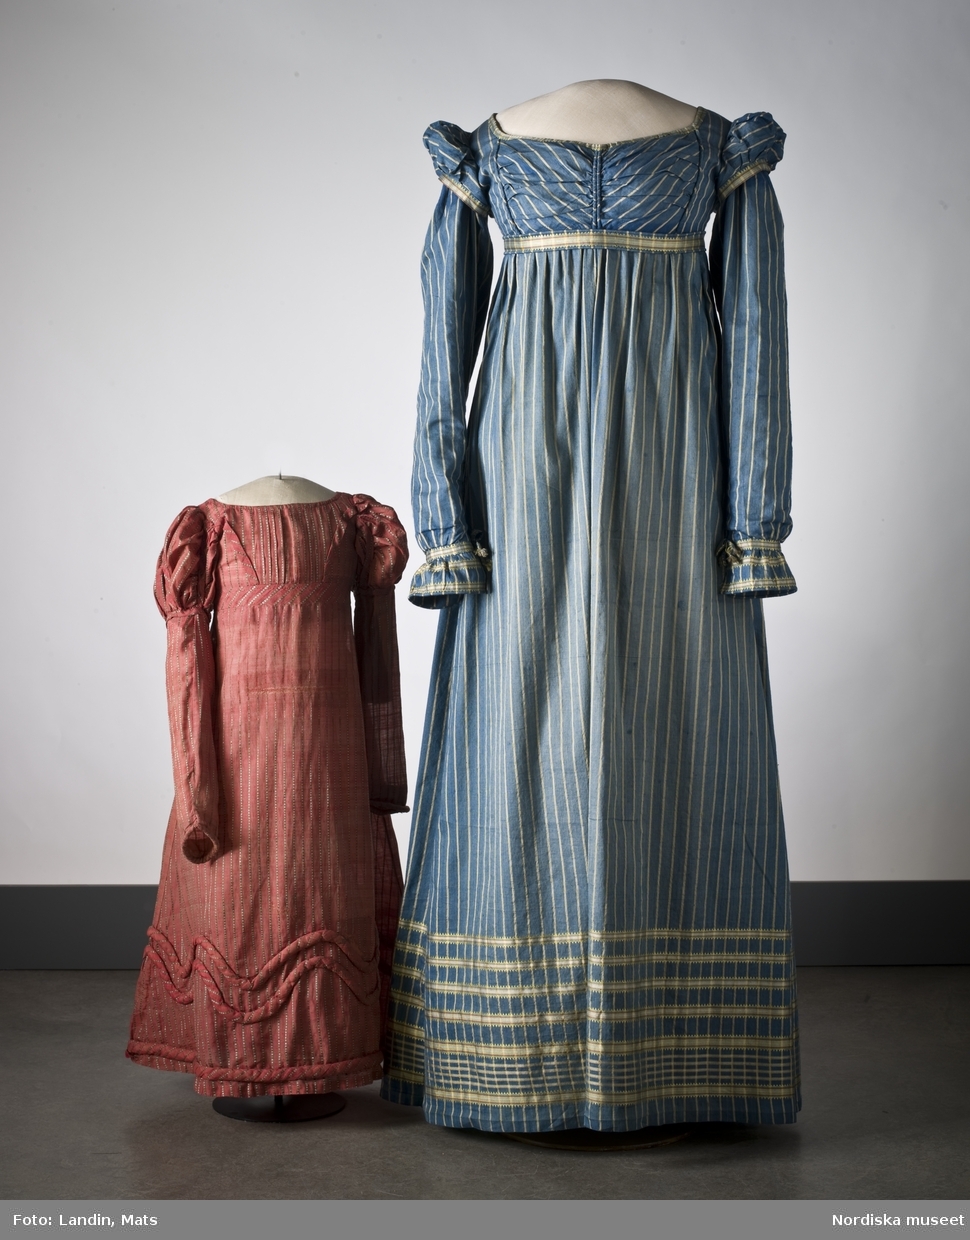 Randig klänning av mörkblått halvsiden. Omkring 1815. Nordiska museet inv nr 164986.